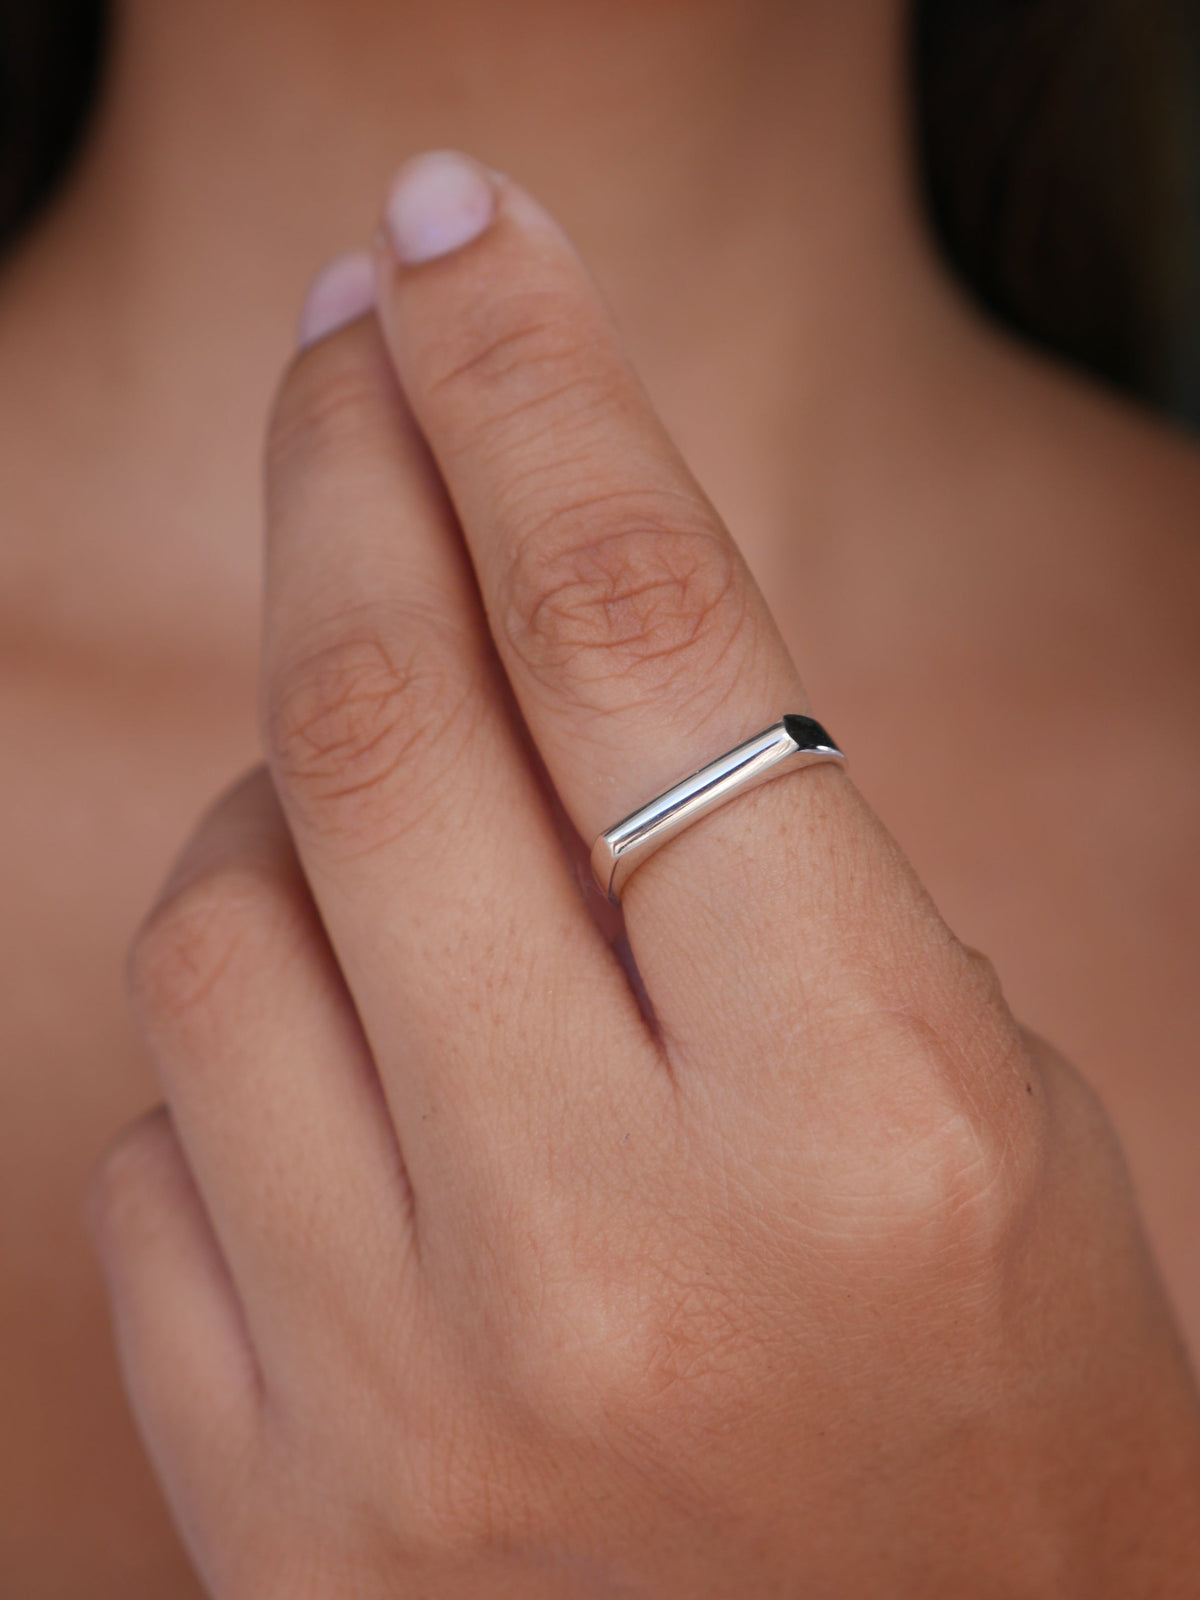 Flat Bar Silver Ring, 925 Sterling Silver Waterproof Nickel Free Luxury Unisex Ring 7